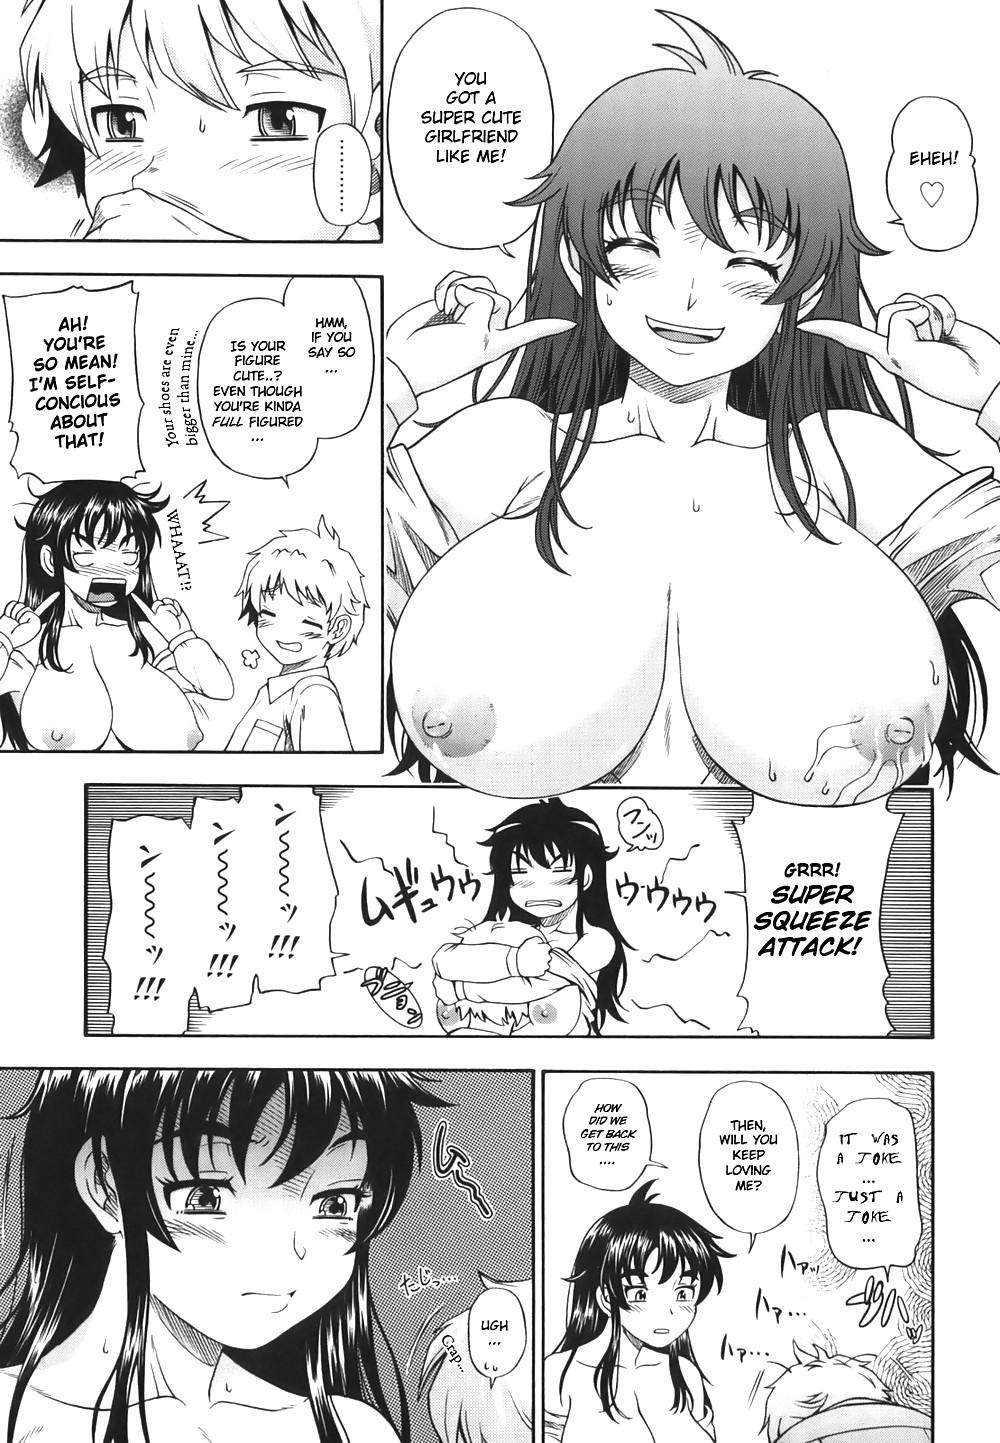 (fumetto hentai) fukudada opere erotiche #1
 #21012190